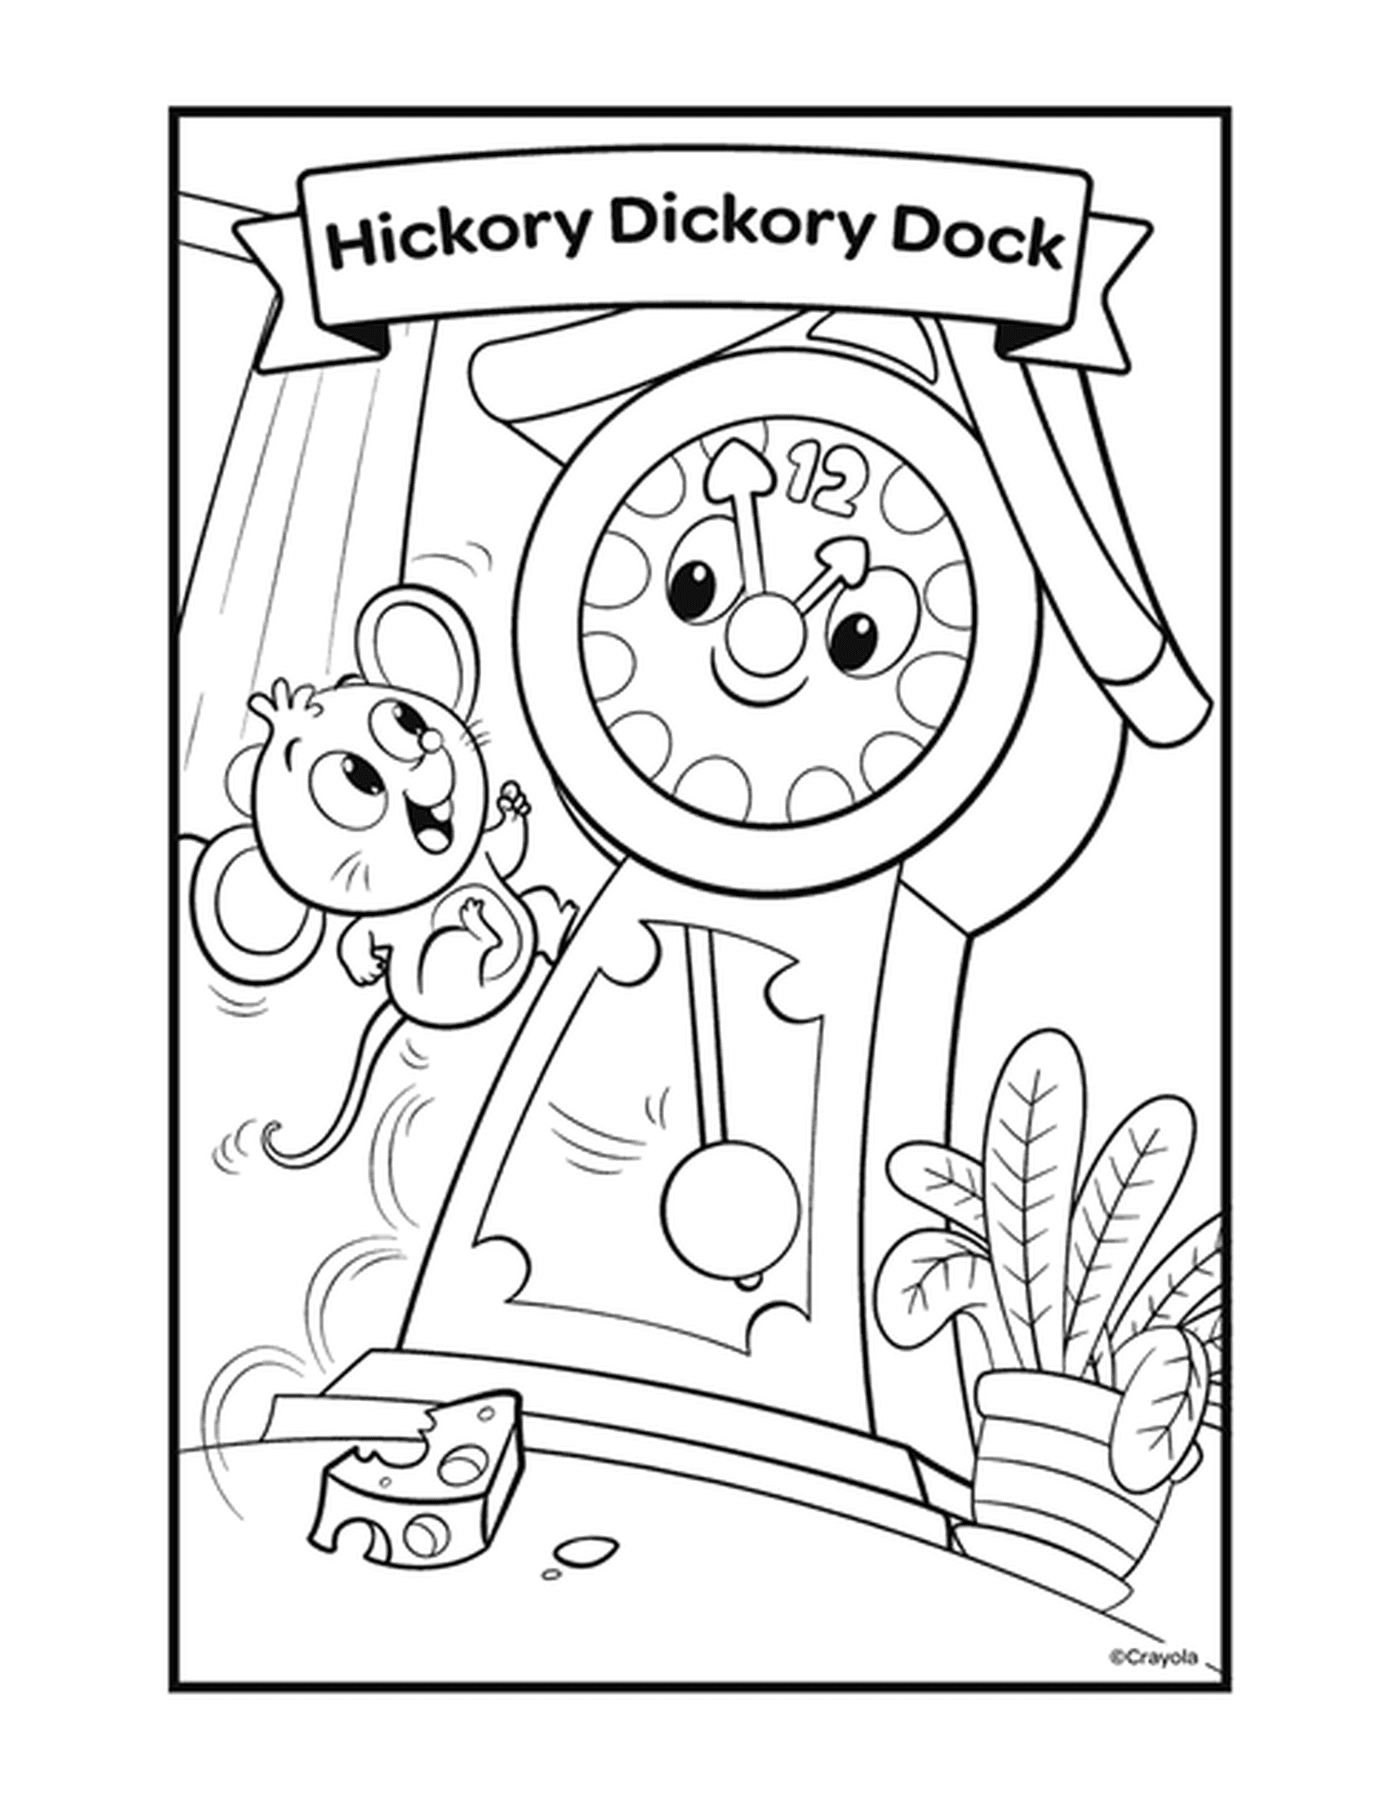  带有时钟和鼠标的 Hickory Dikory 码头 